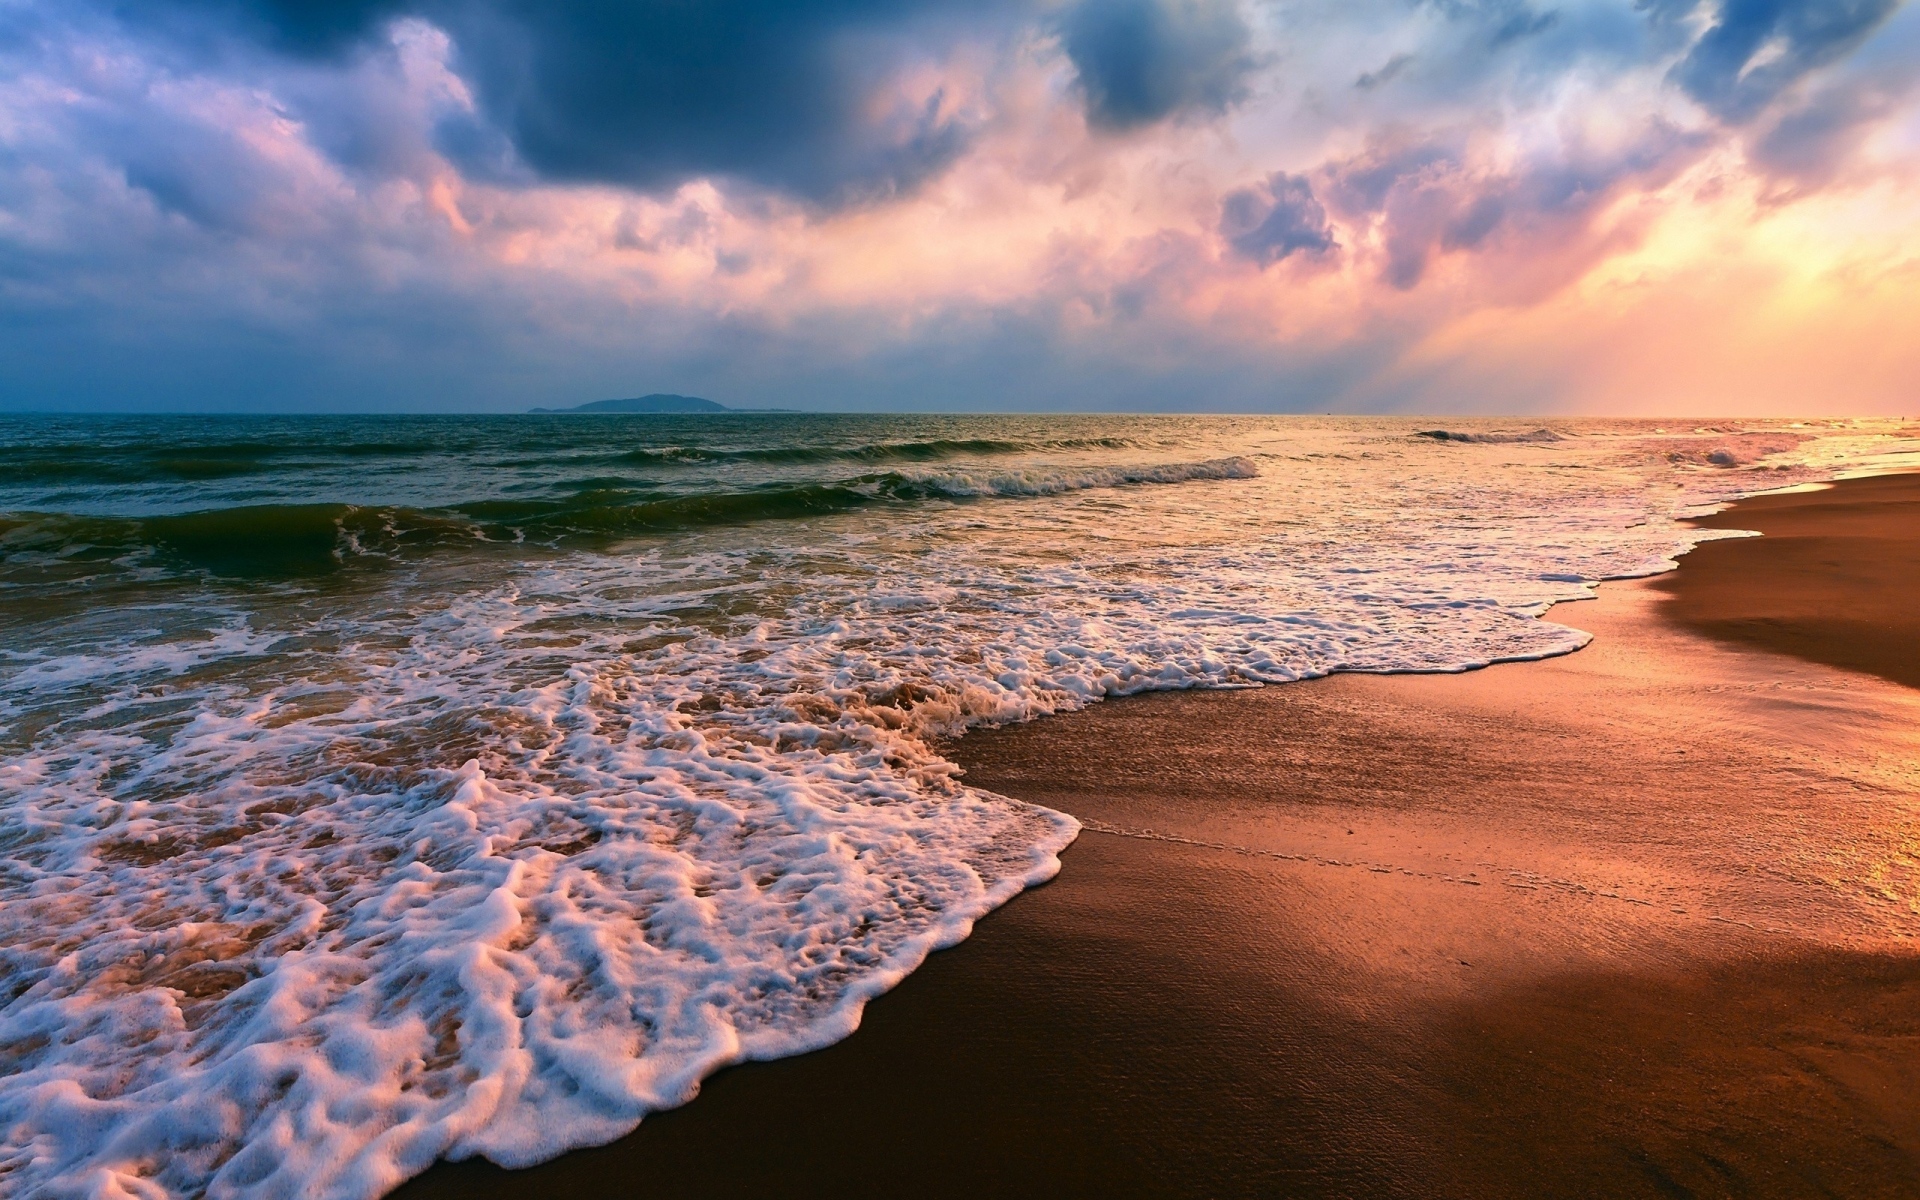 Картинки Песок, мокрый, волны, море, пляж, облачно, защищенный фото и обои на рабочий стол